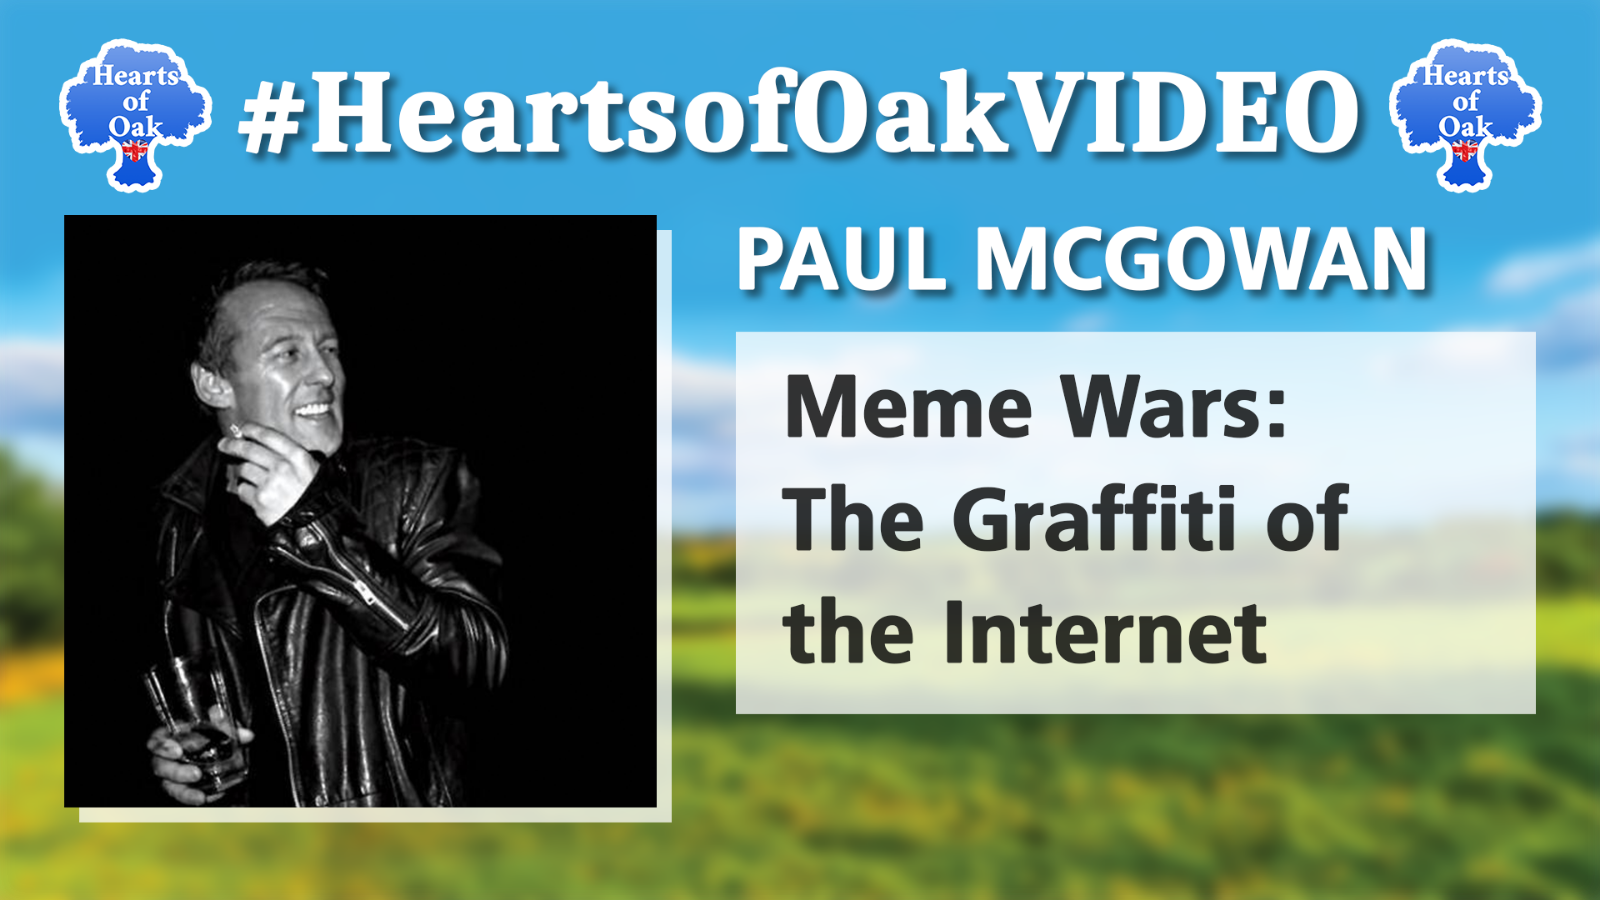 Paul McGowan - Meme Wars: The Graffiti of the Internet